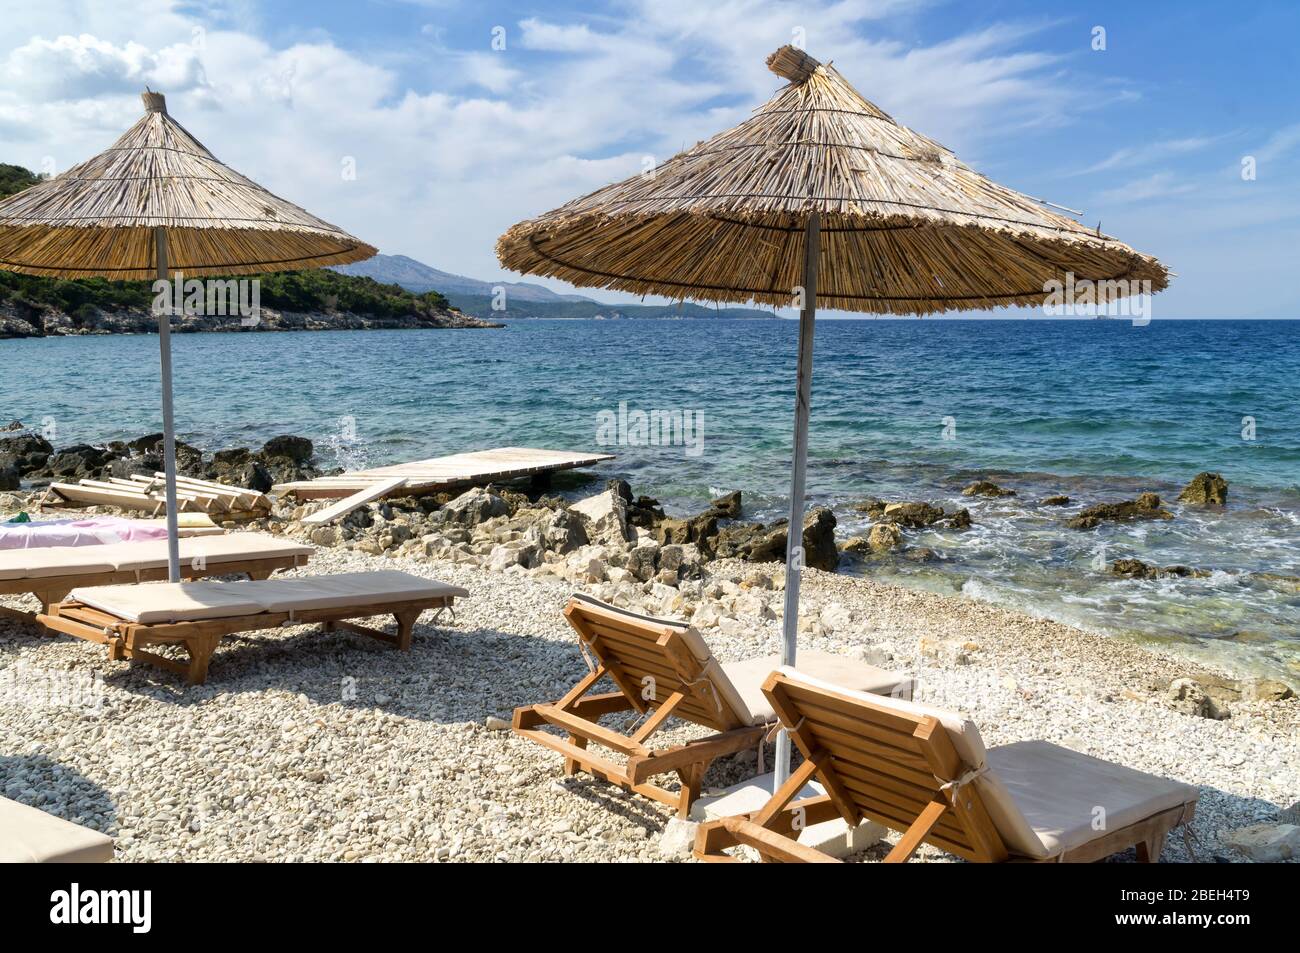 Felsigen Strand am Ufer des Ionischen Meer mit Sonnenliegen und Sonnenschirme Stroh. Blau und tourquse Meer im Hintergrund, niemand. Sommertag. Ksamil, Al Stockfoto